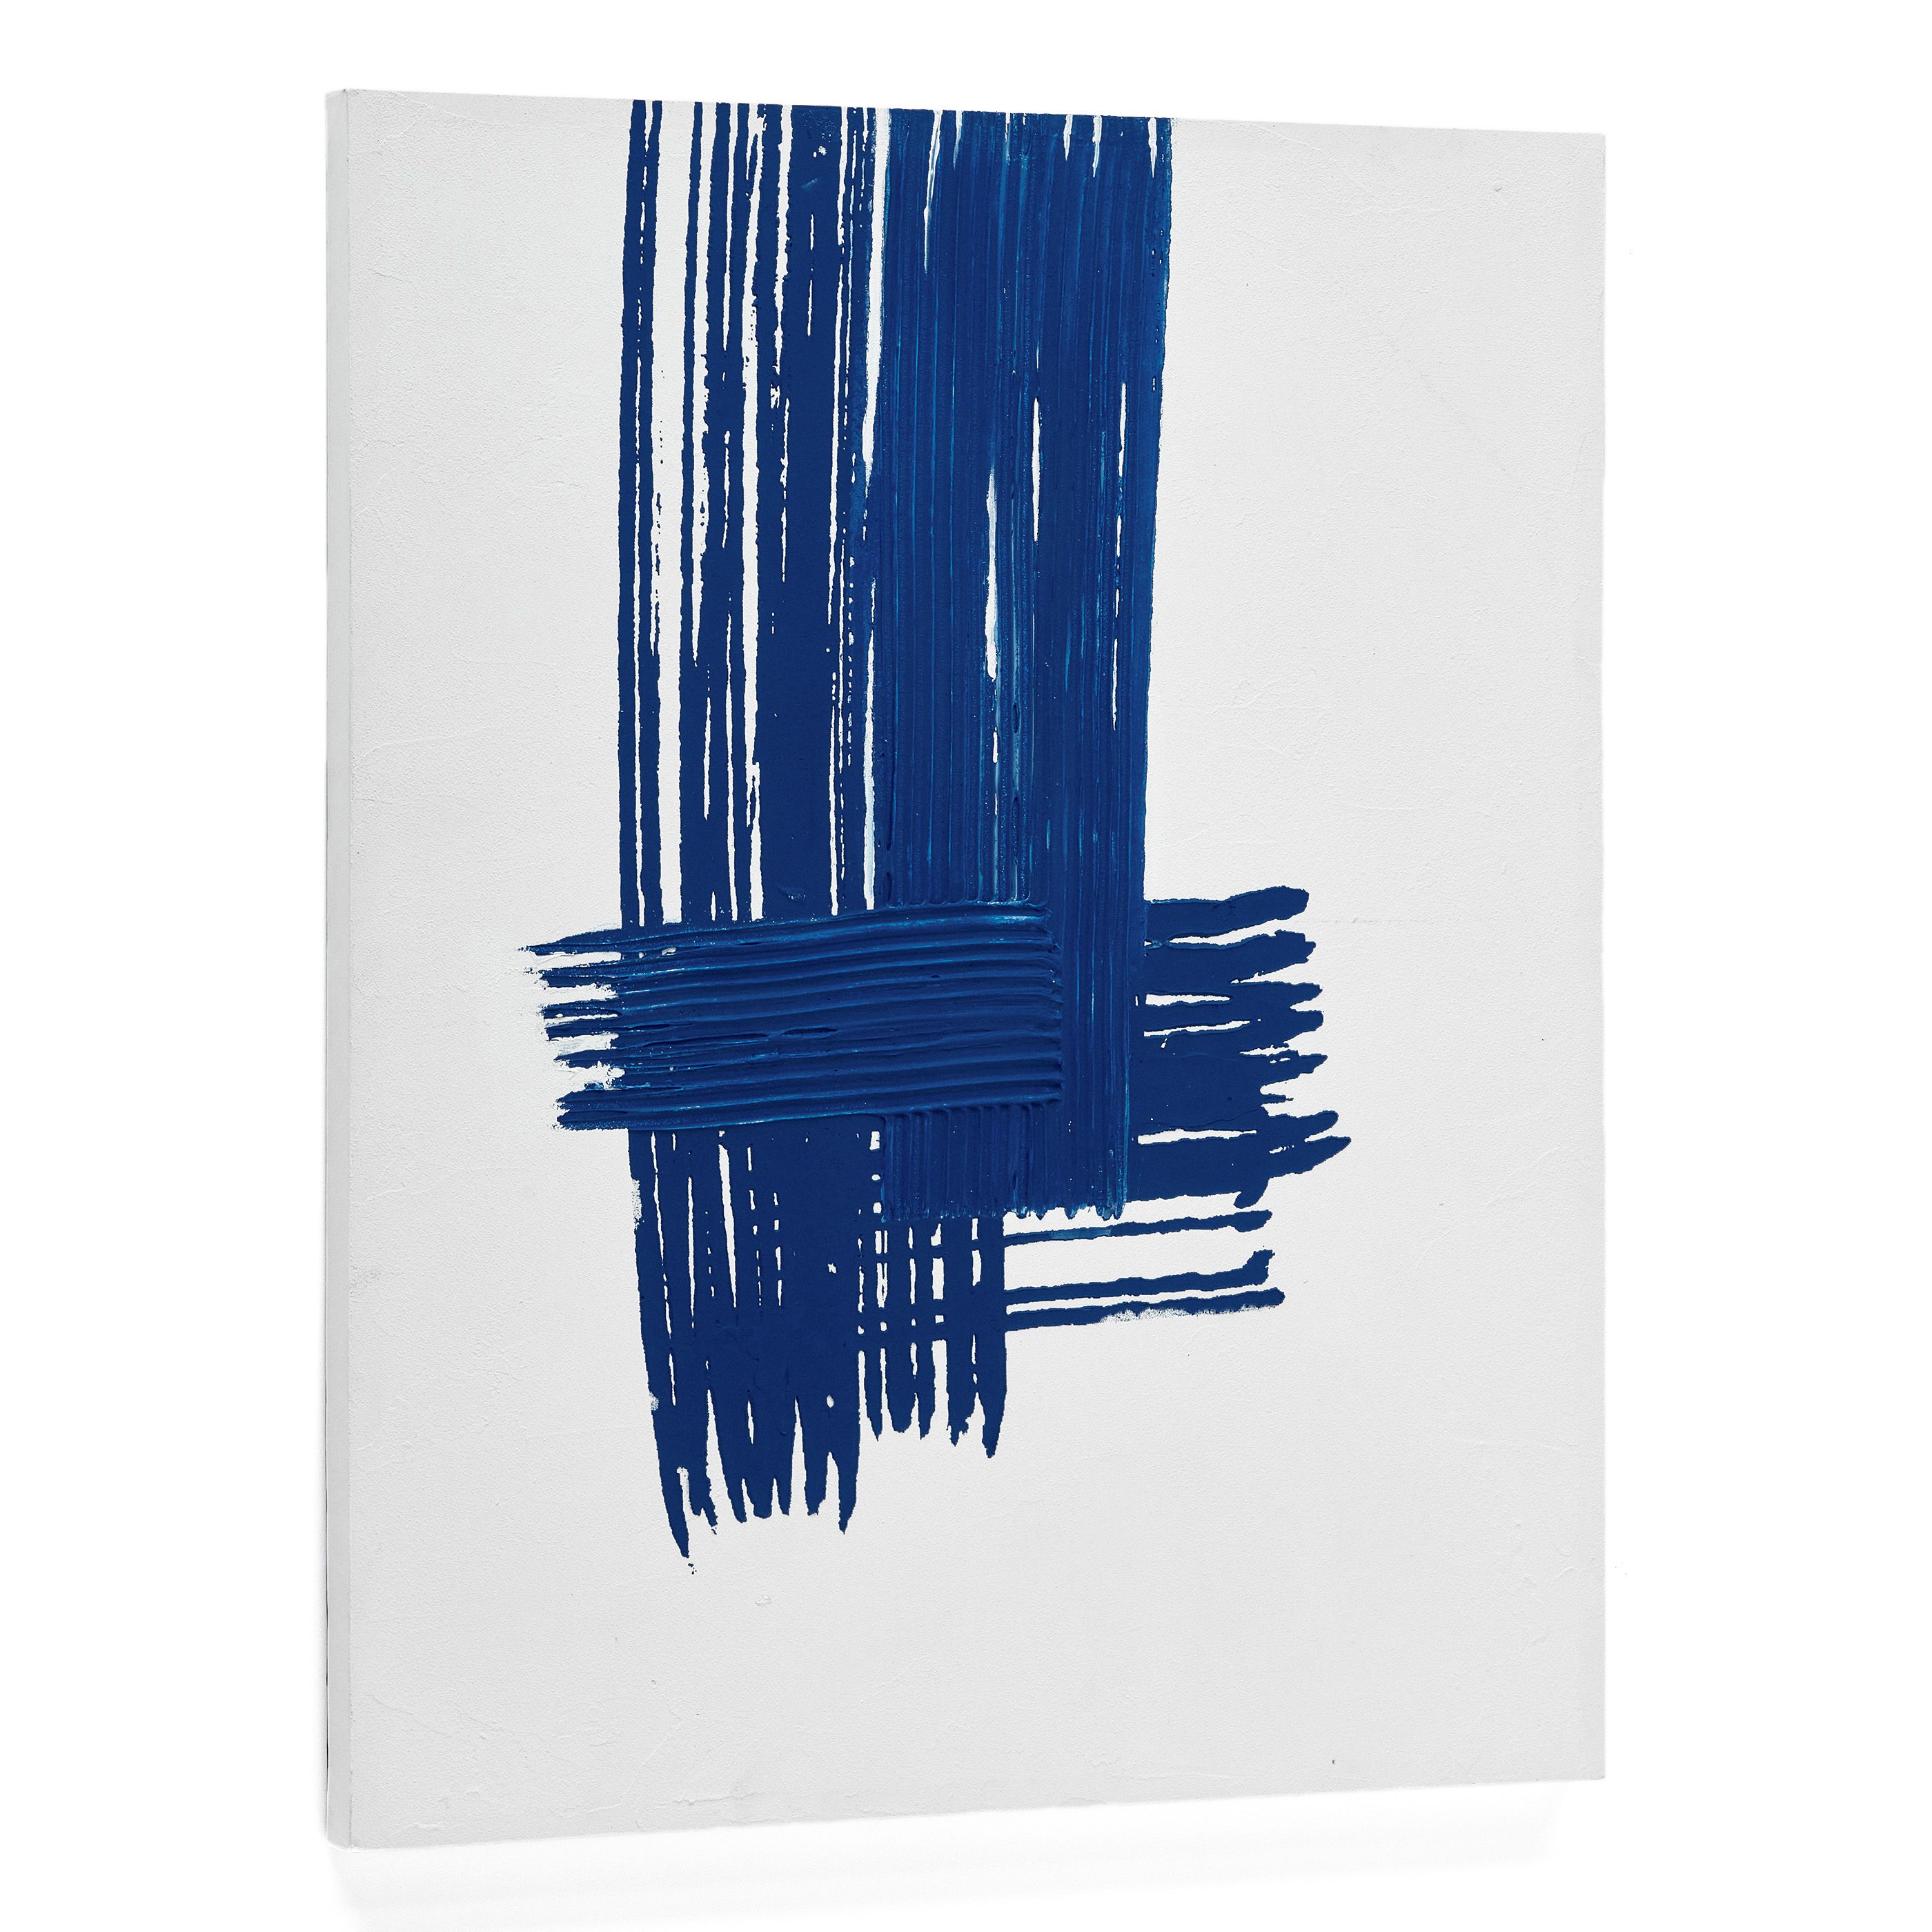 Sagaro Абстрактное полотно в бело-голубых тонах 80 x 100 см Sagaro